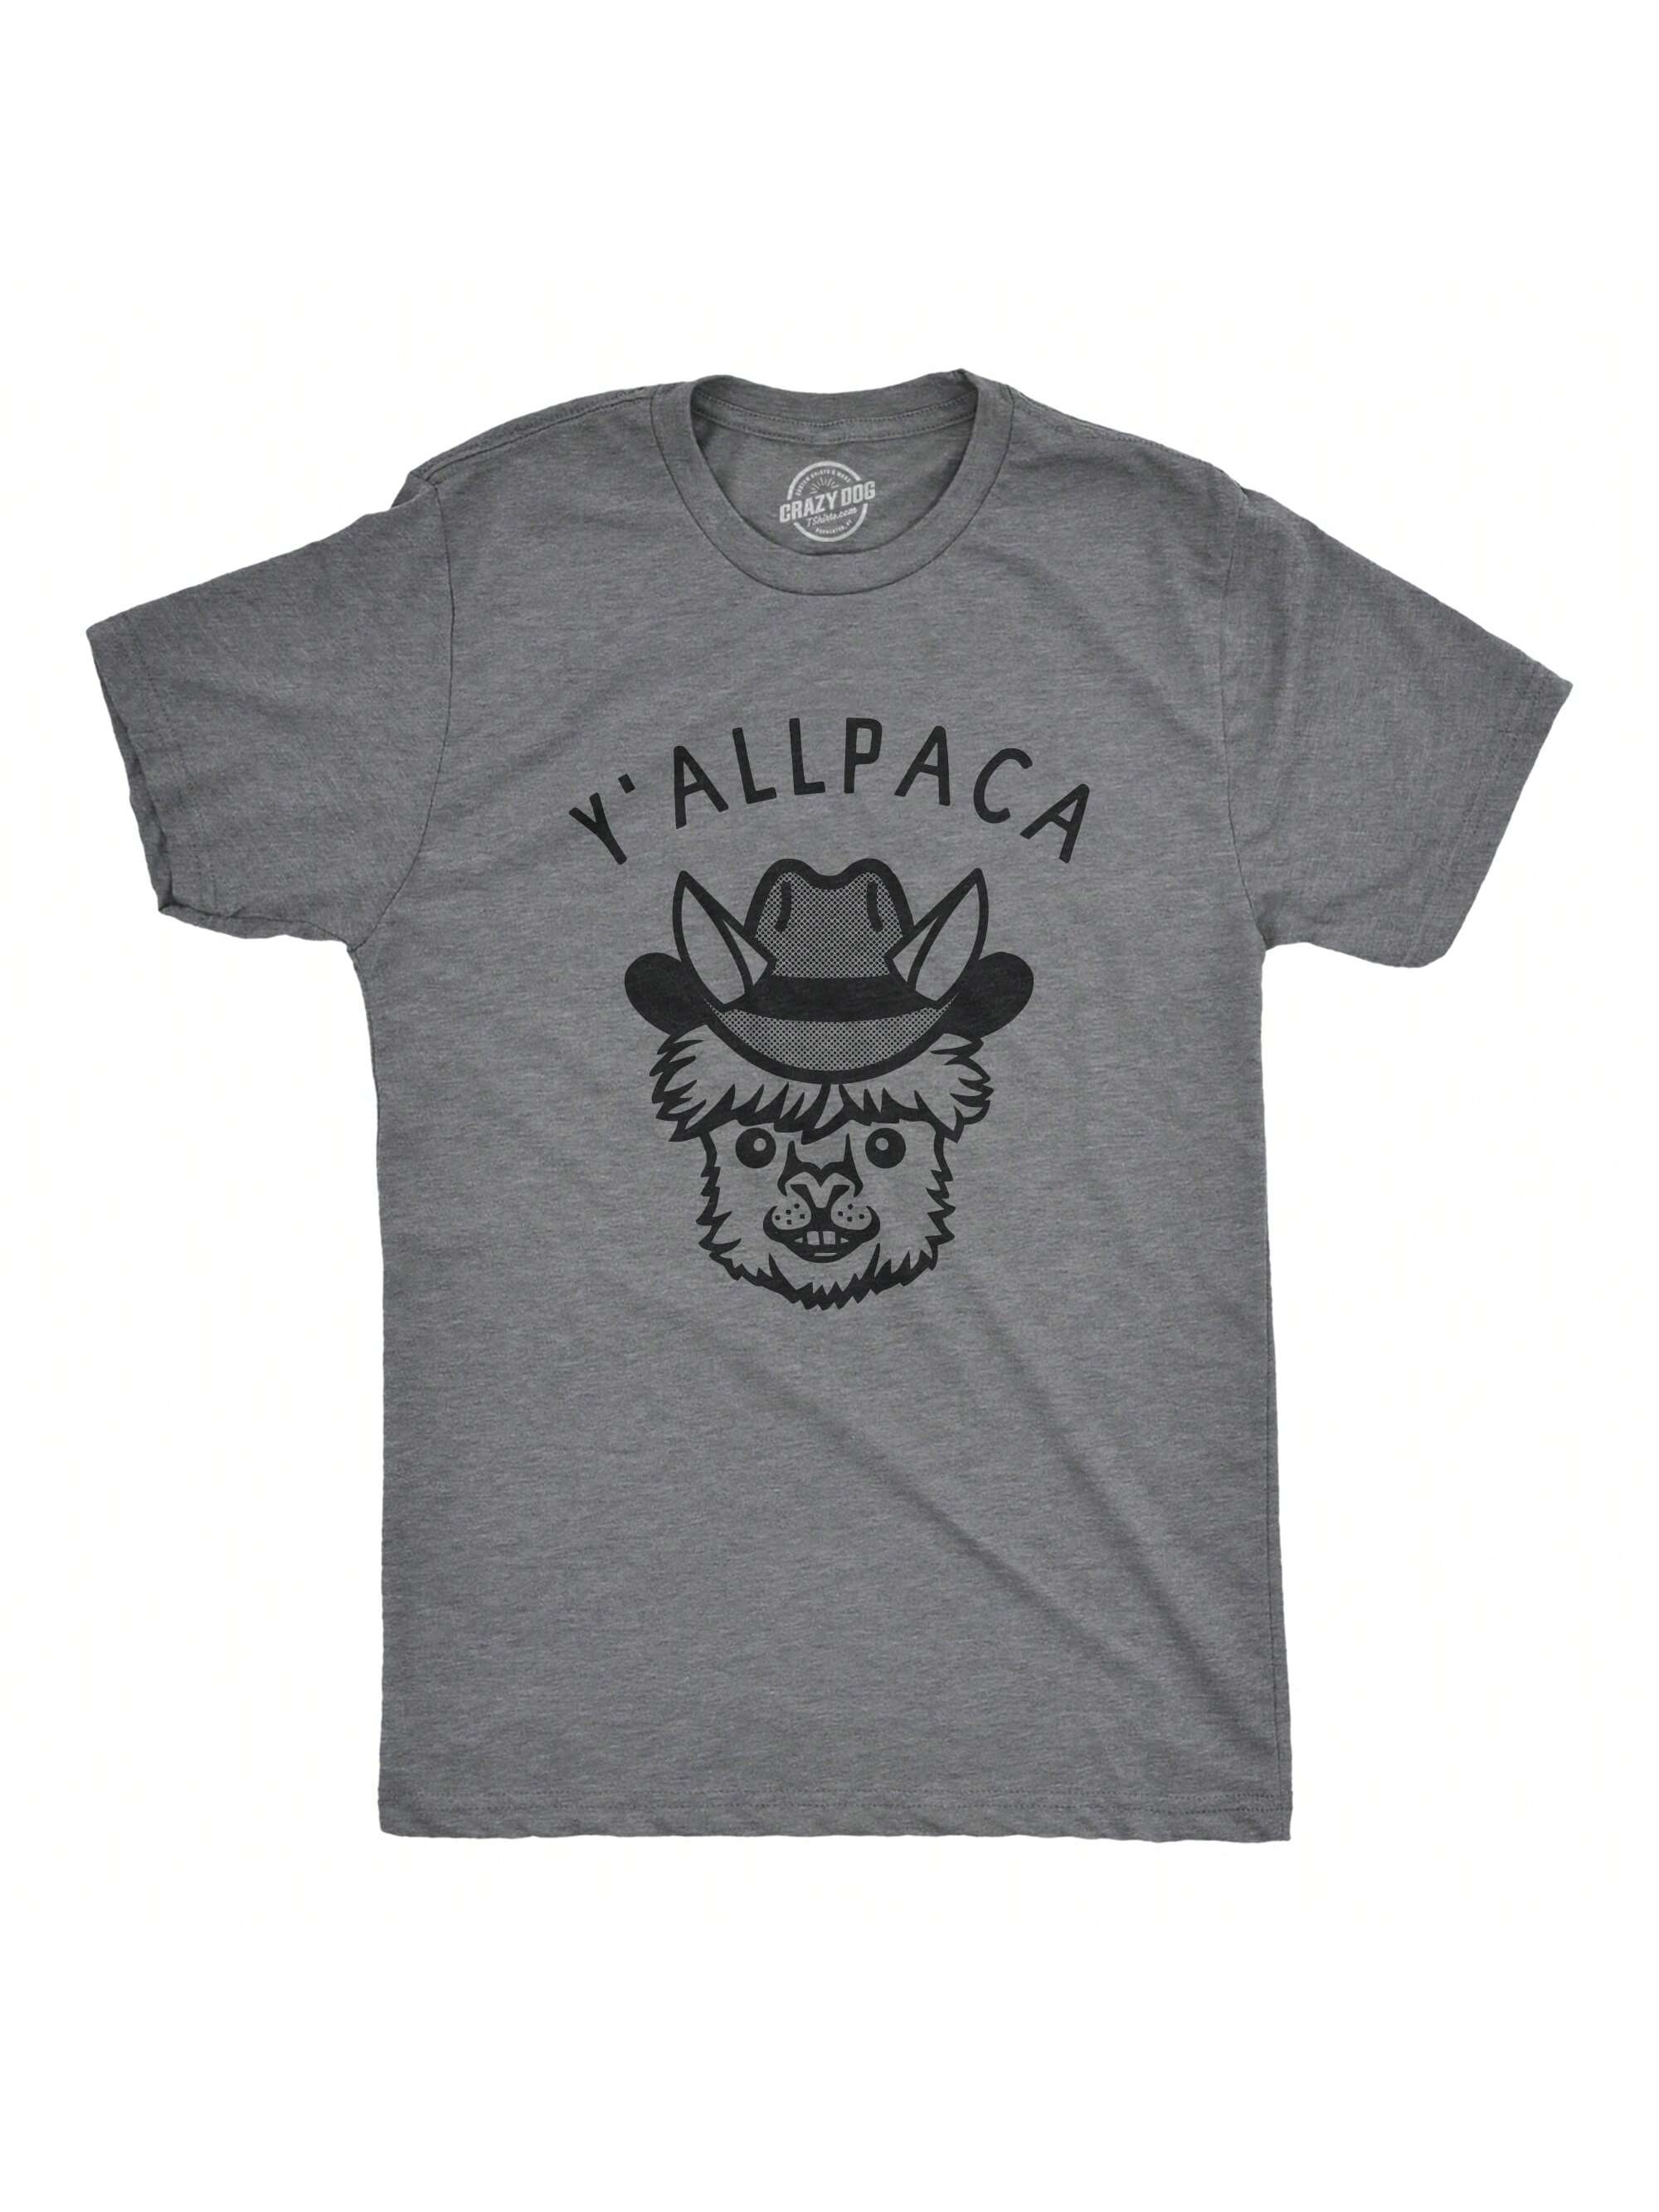 Мужская футболка «Nature Calls» с забавной саркастической надписью «Медведь какает», темно-серый вереск - yallpaca